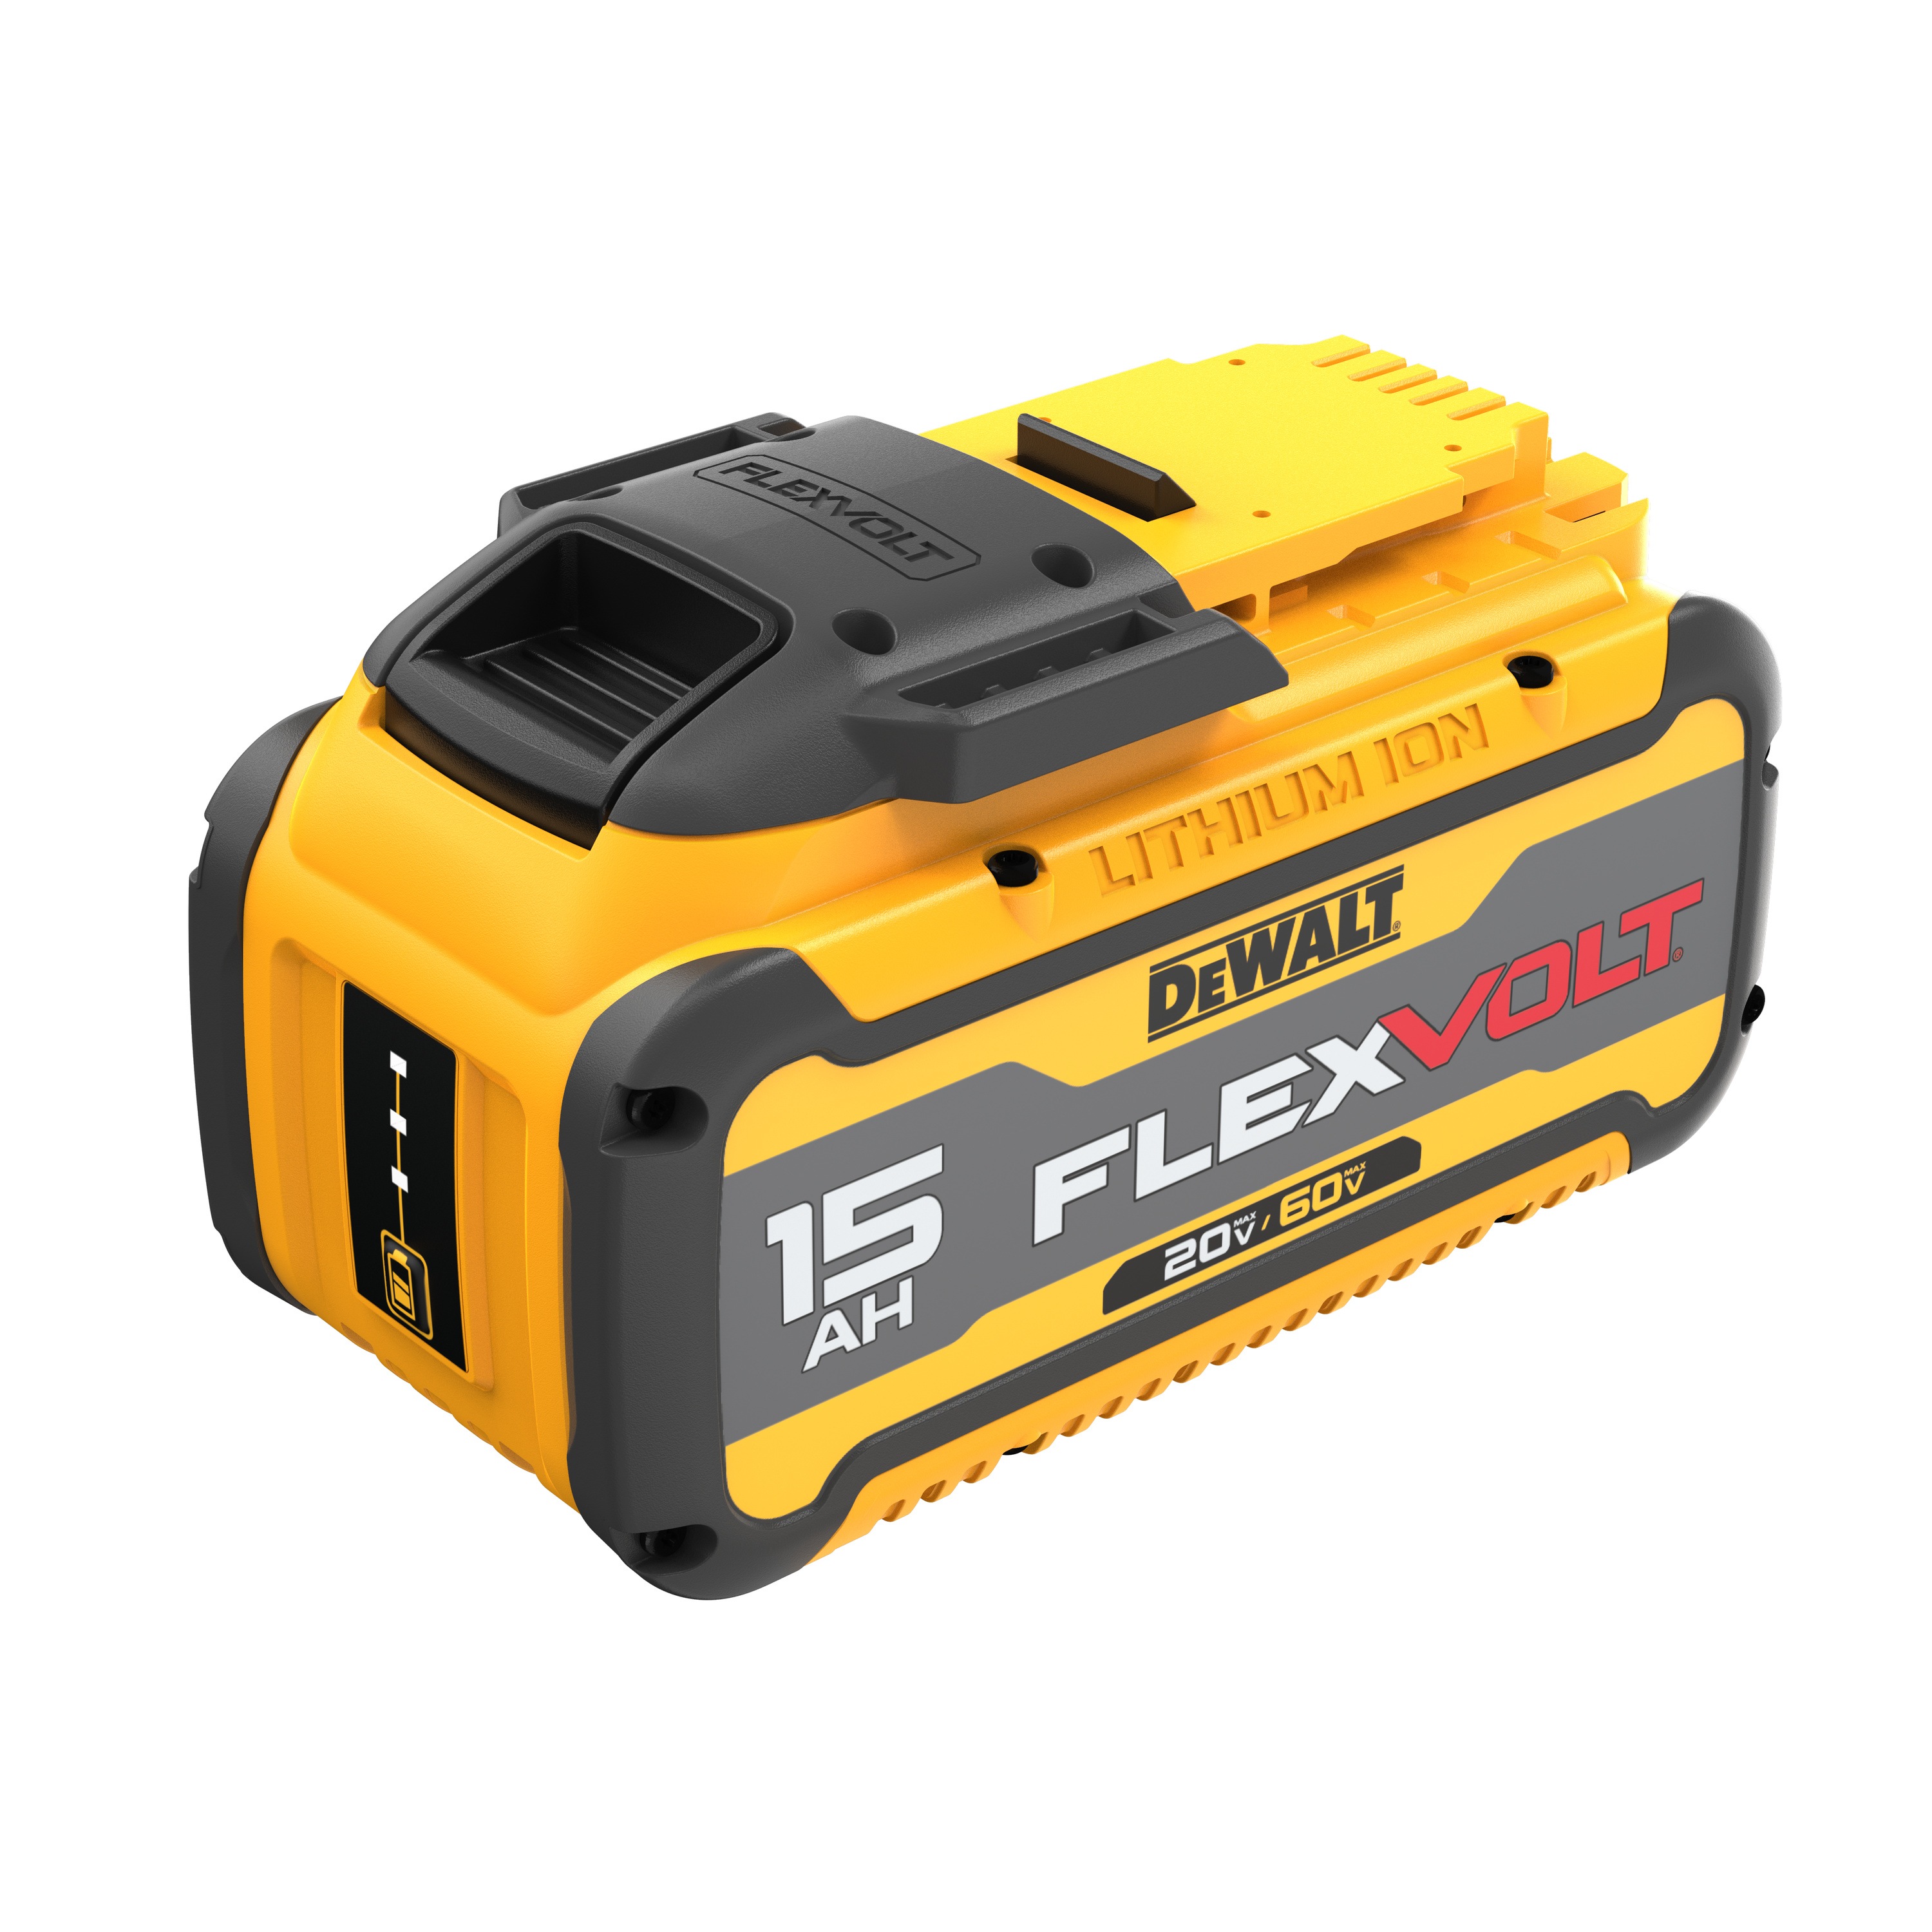 Profile of flexvolt 20 by 60 volt 15 ampere hour battery.